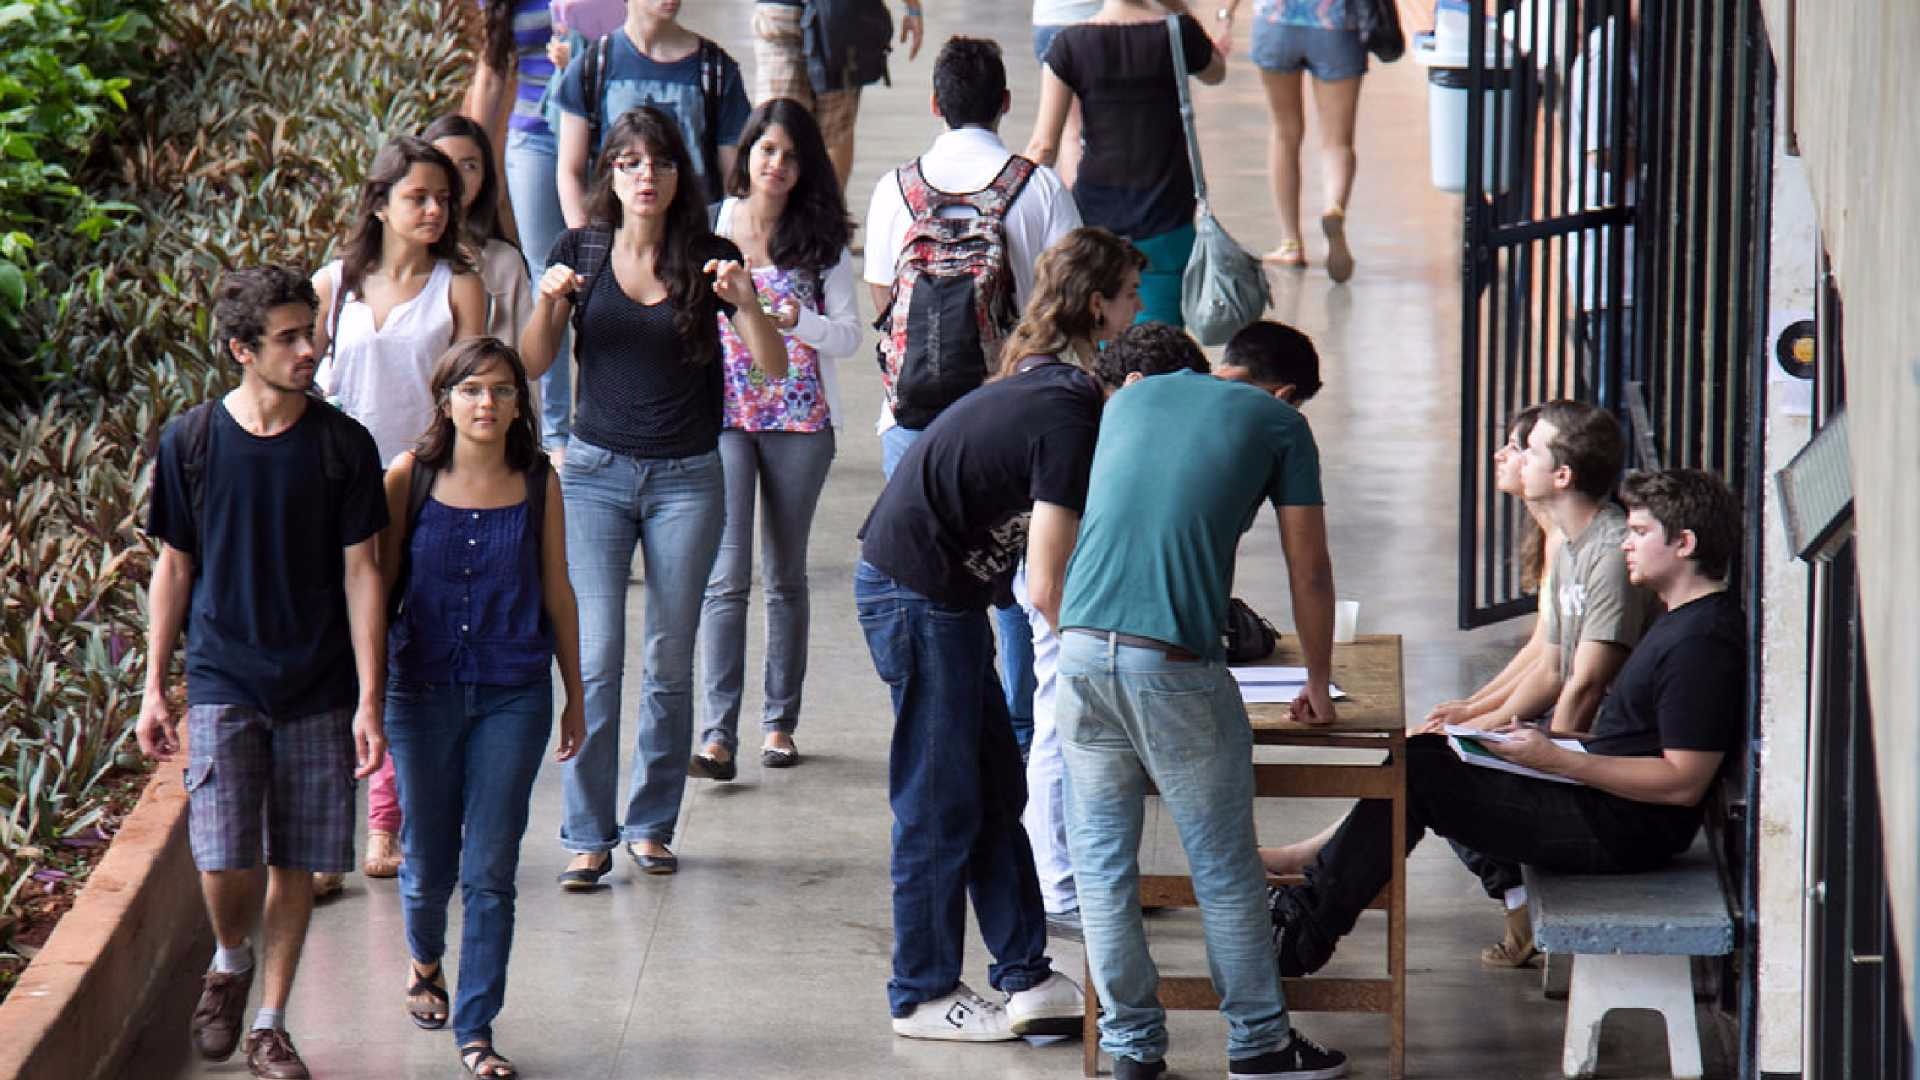 Jovens preferem universidades públicas piores a privadas de qualidade